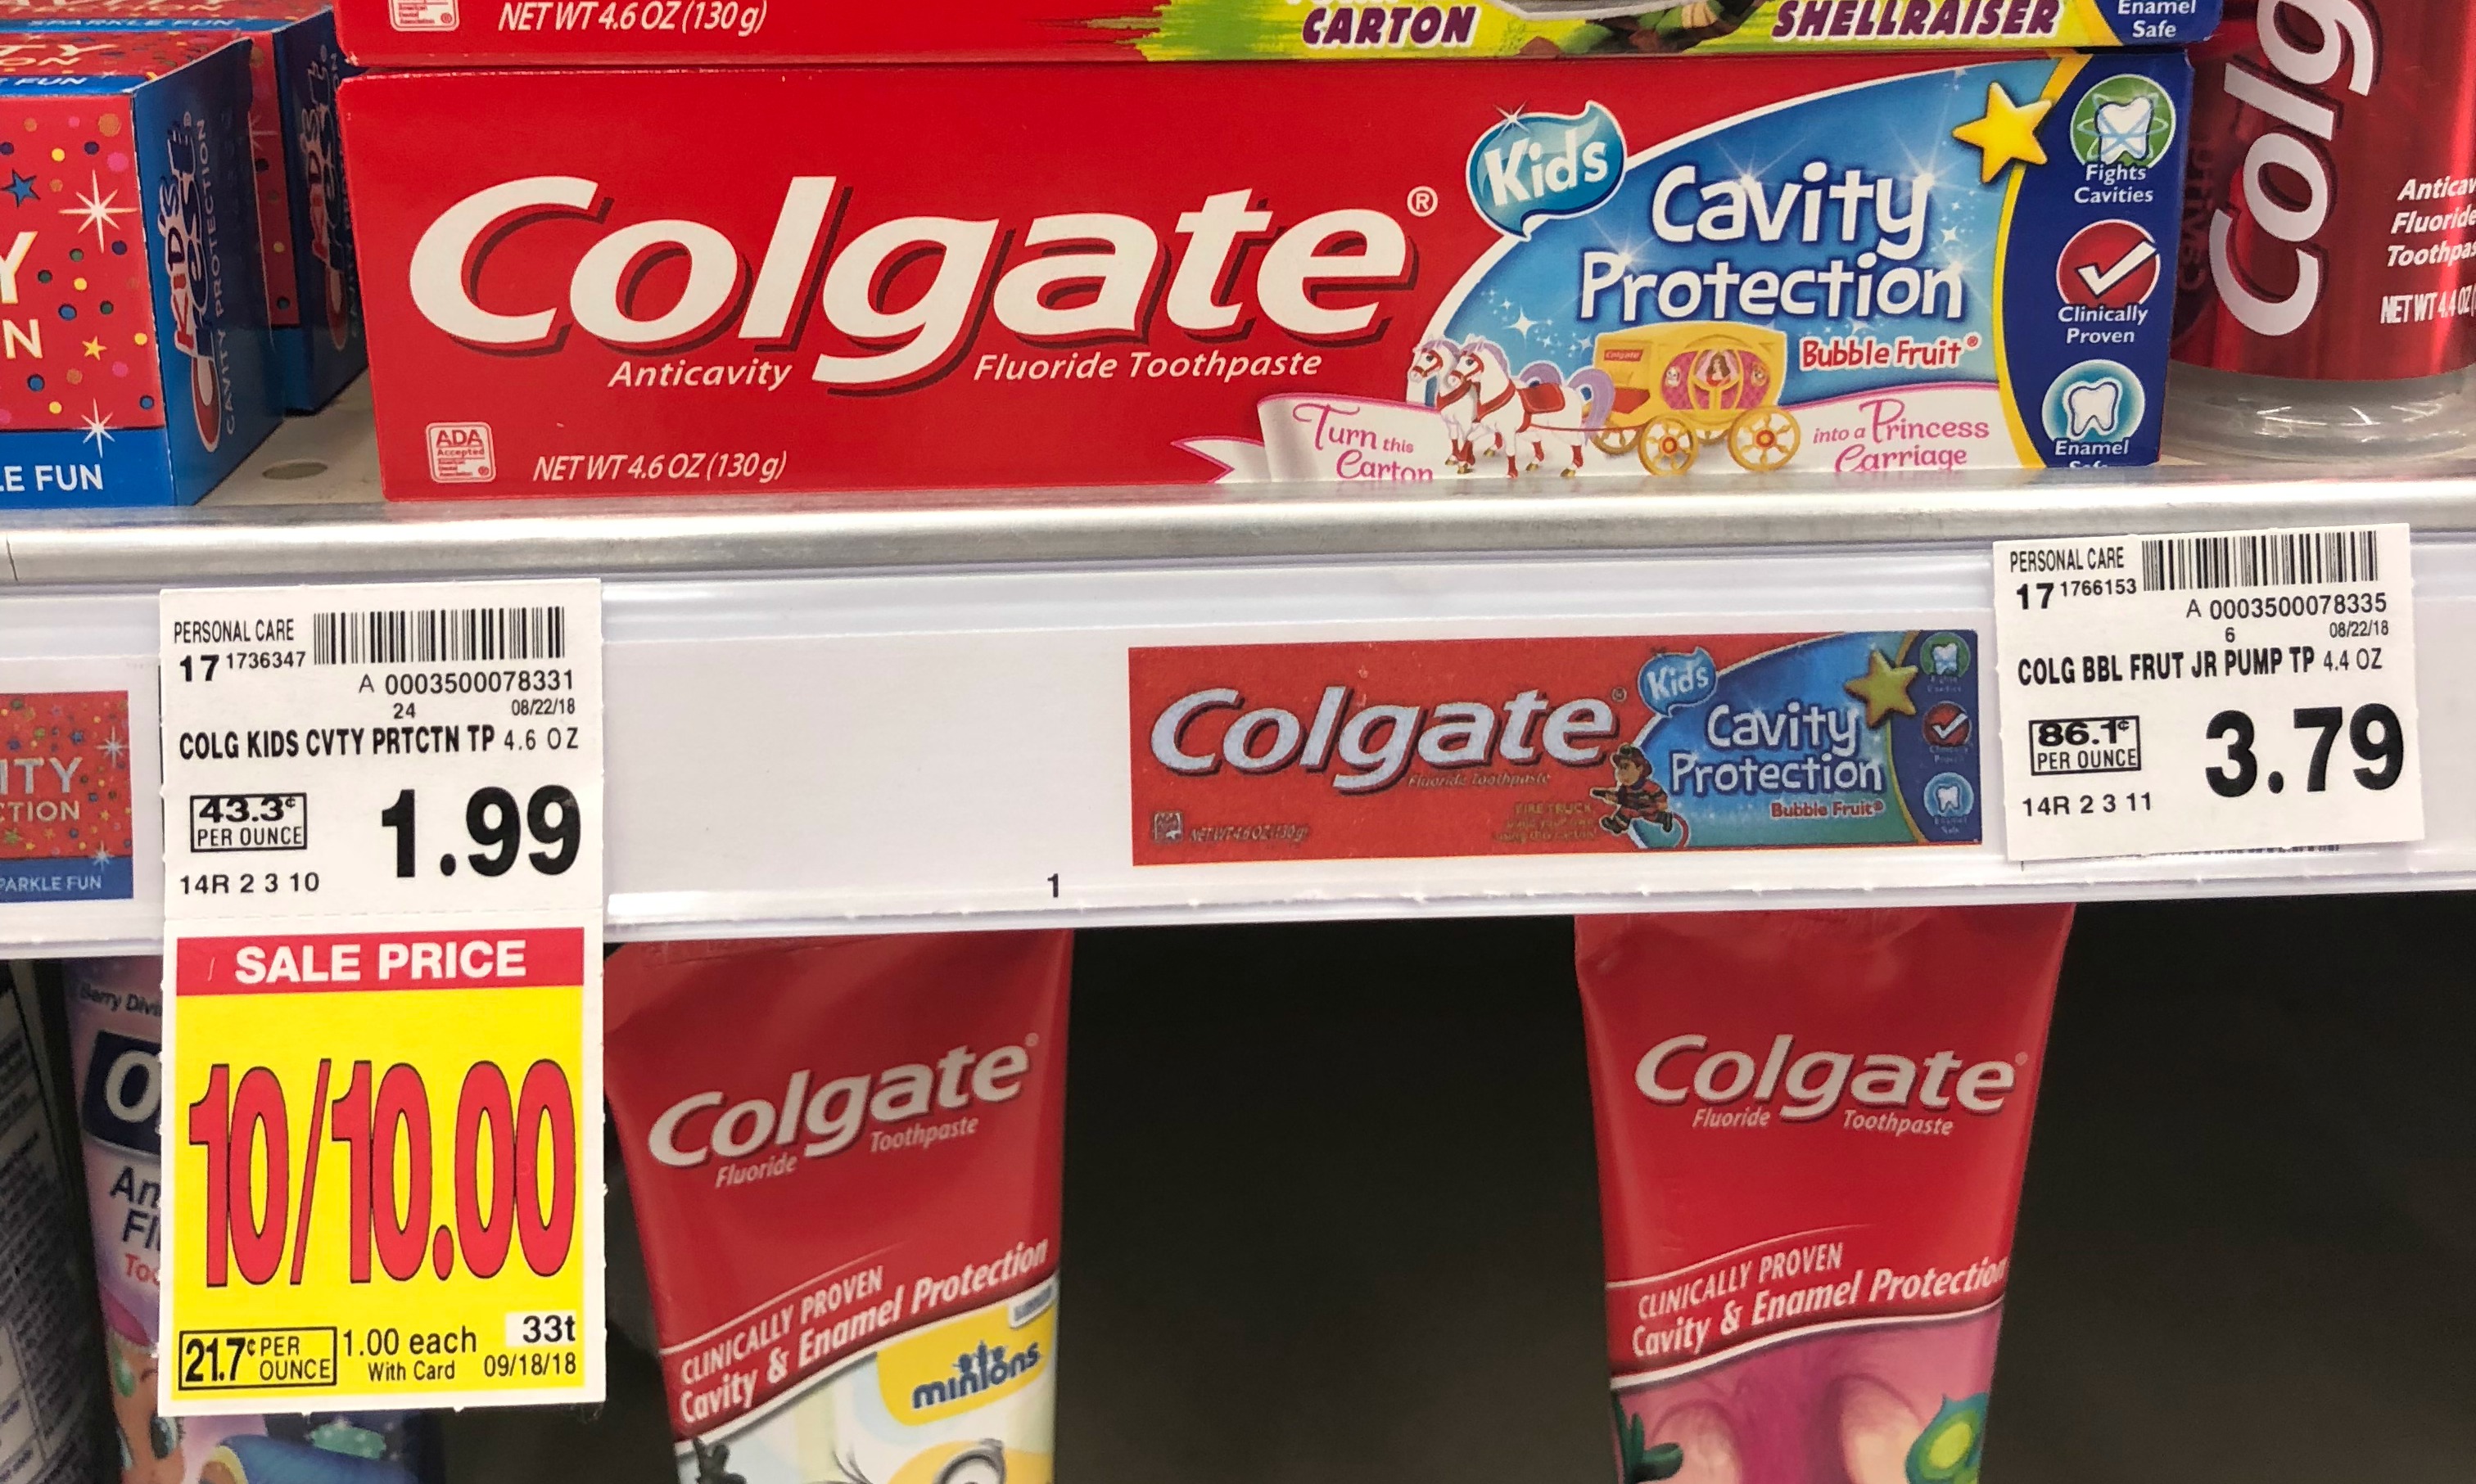 Colgate Toothpaste ONLY 0.50 at Kroger (Reg 1.69)! Kroger Krazy